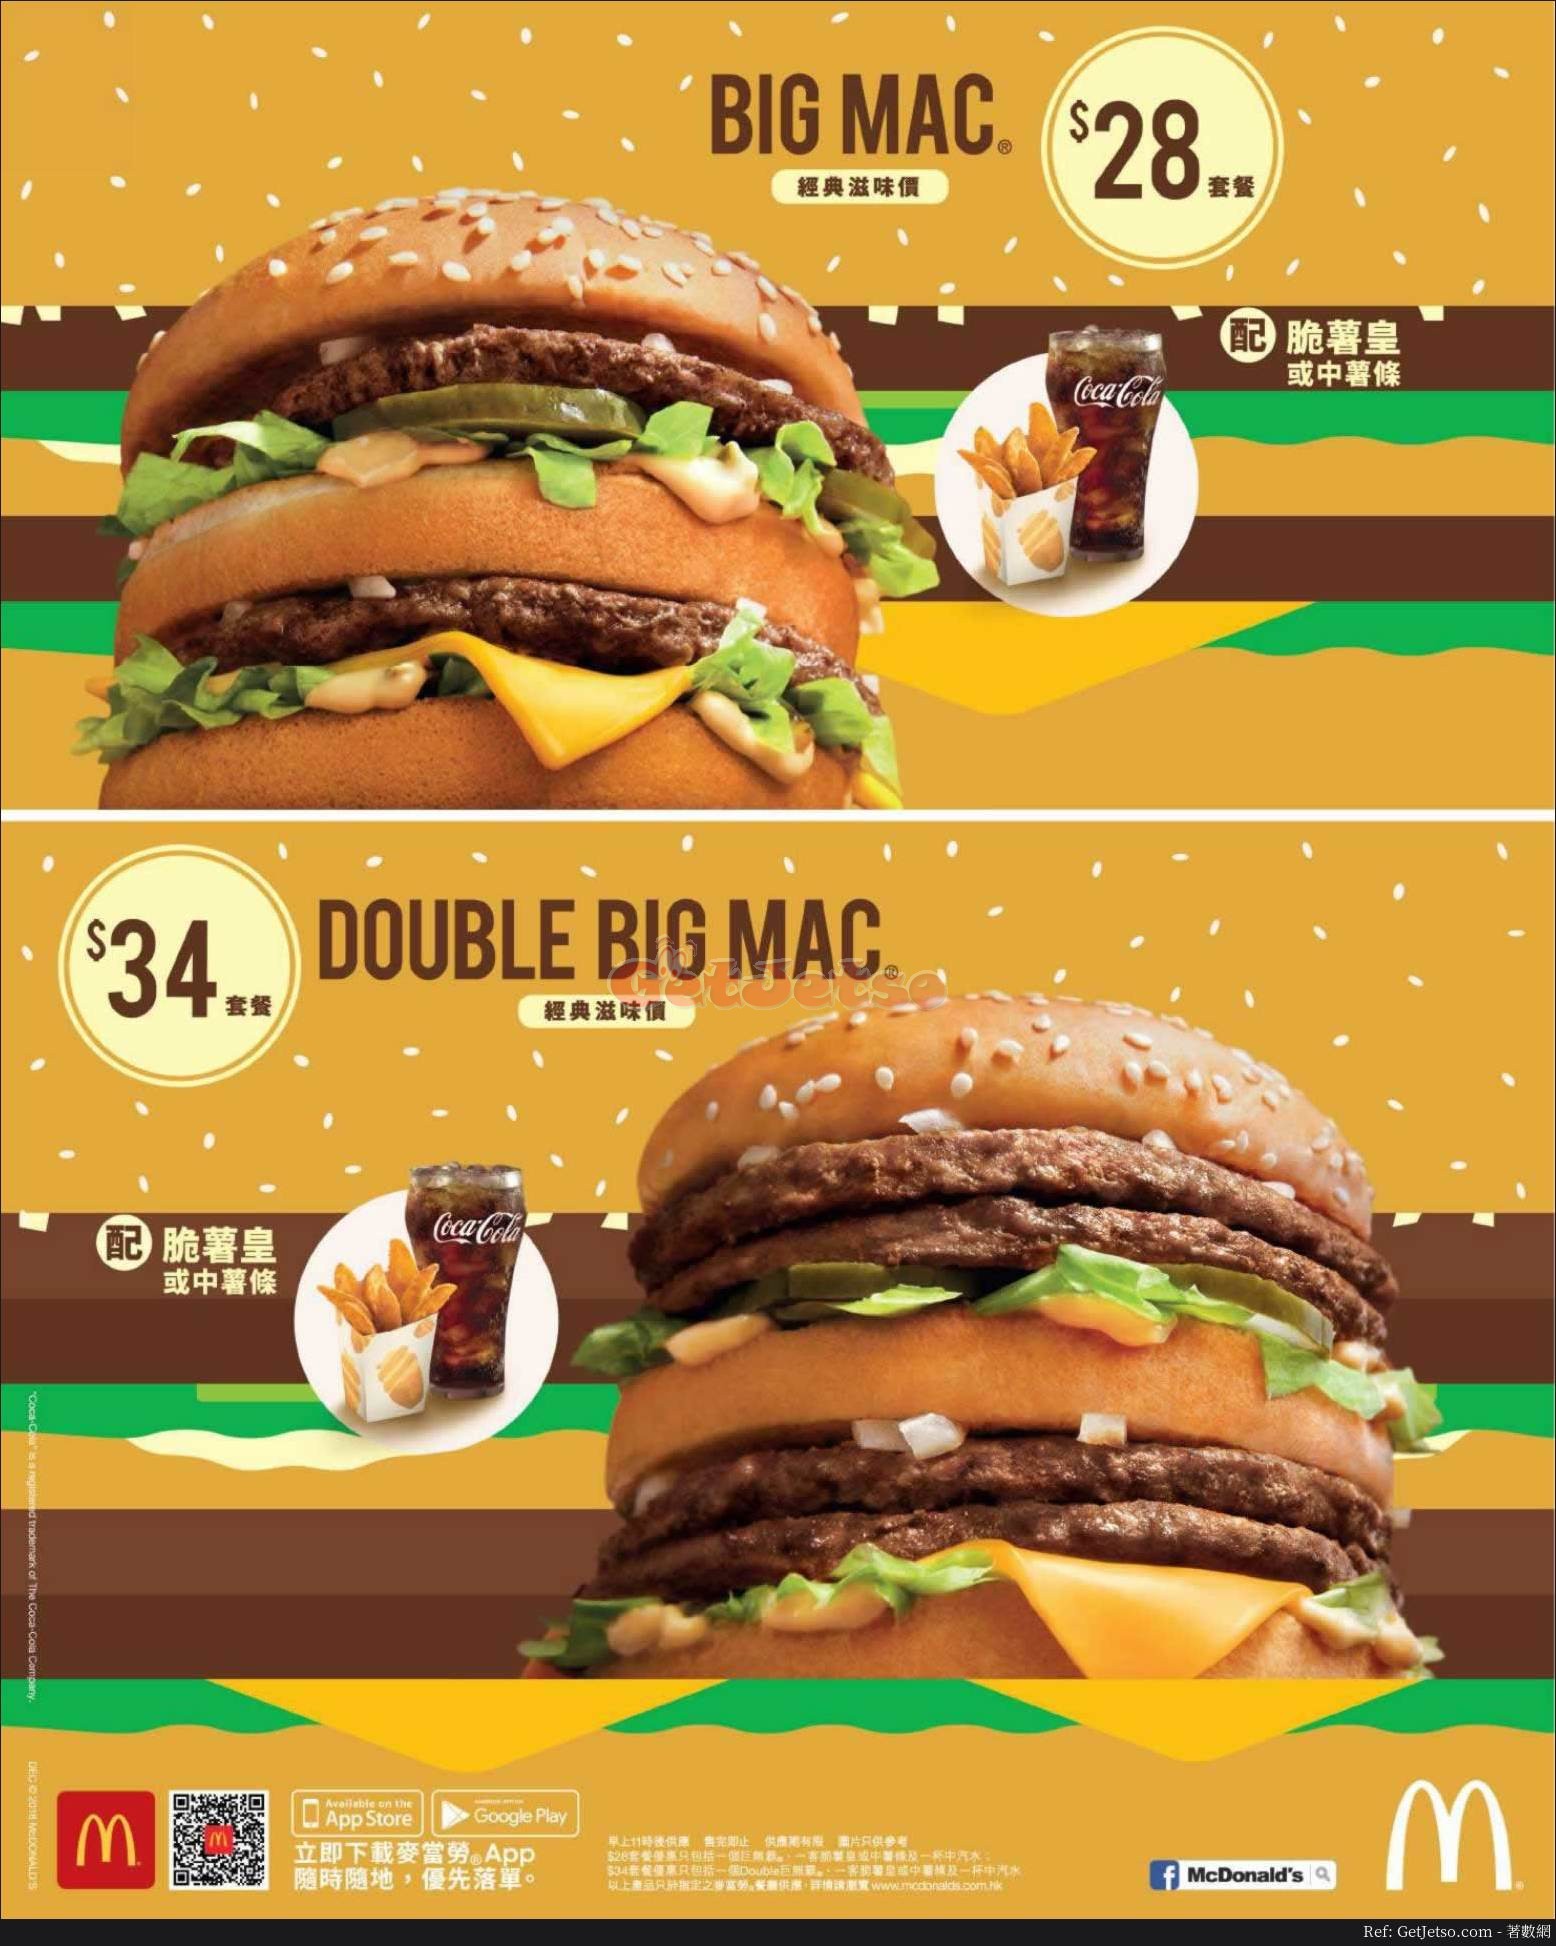 麥當勞 BIG MAC 套餐優惠(18年12月11日起)圖片1